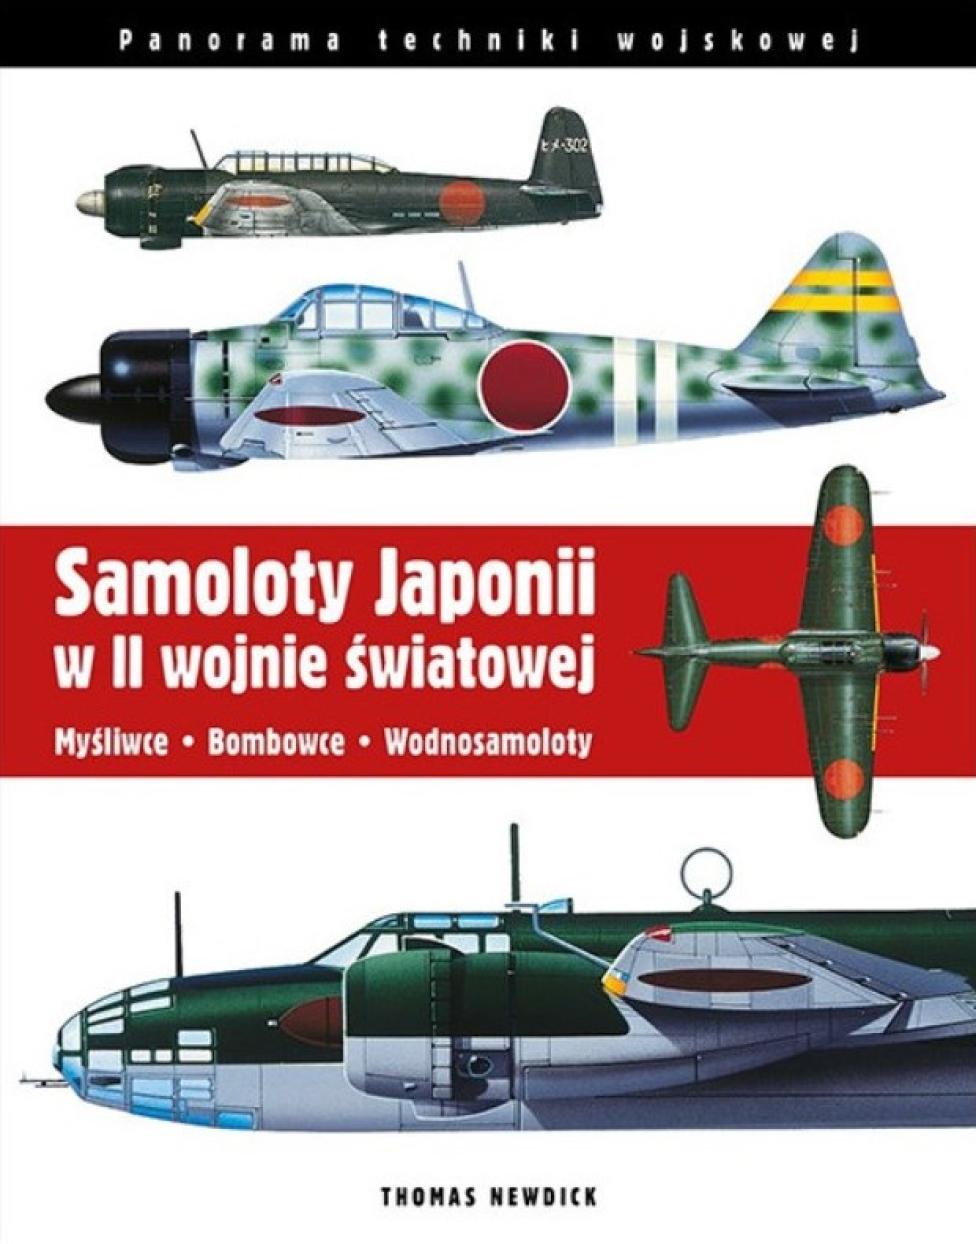 Książka "Samoloty Japonii w II wojnie światowej" (fot. Wydawnictwo Alma-Press)